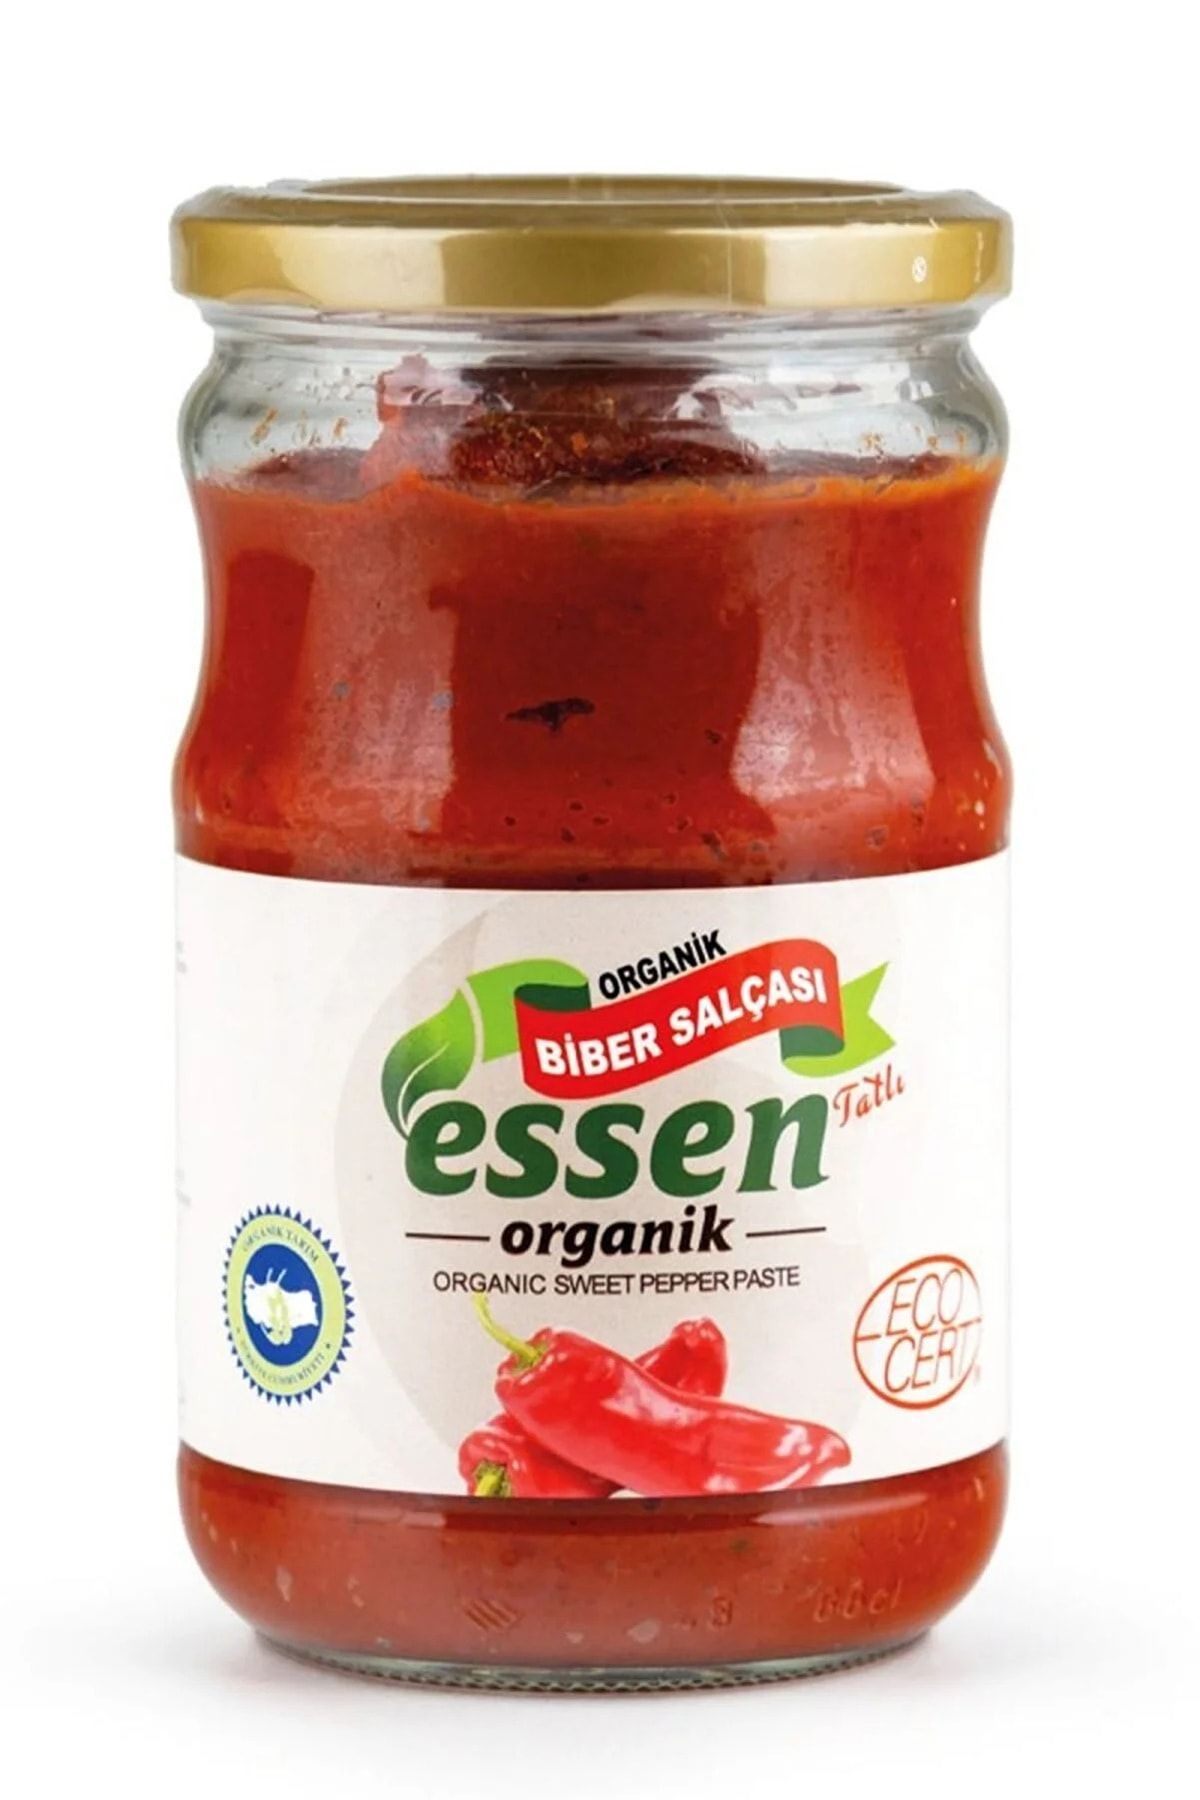 Essen Organik Organik Biber Salçası 610 Gr (tatlı) (cam Kavanoz, Ecocert Sertifikalı)